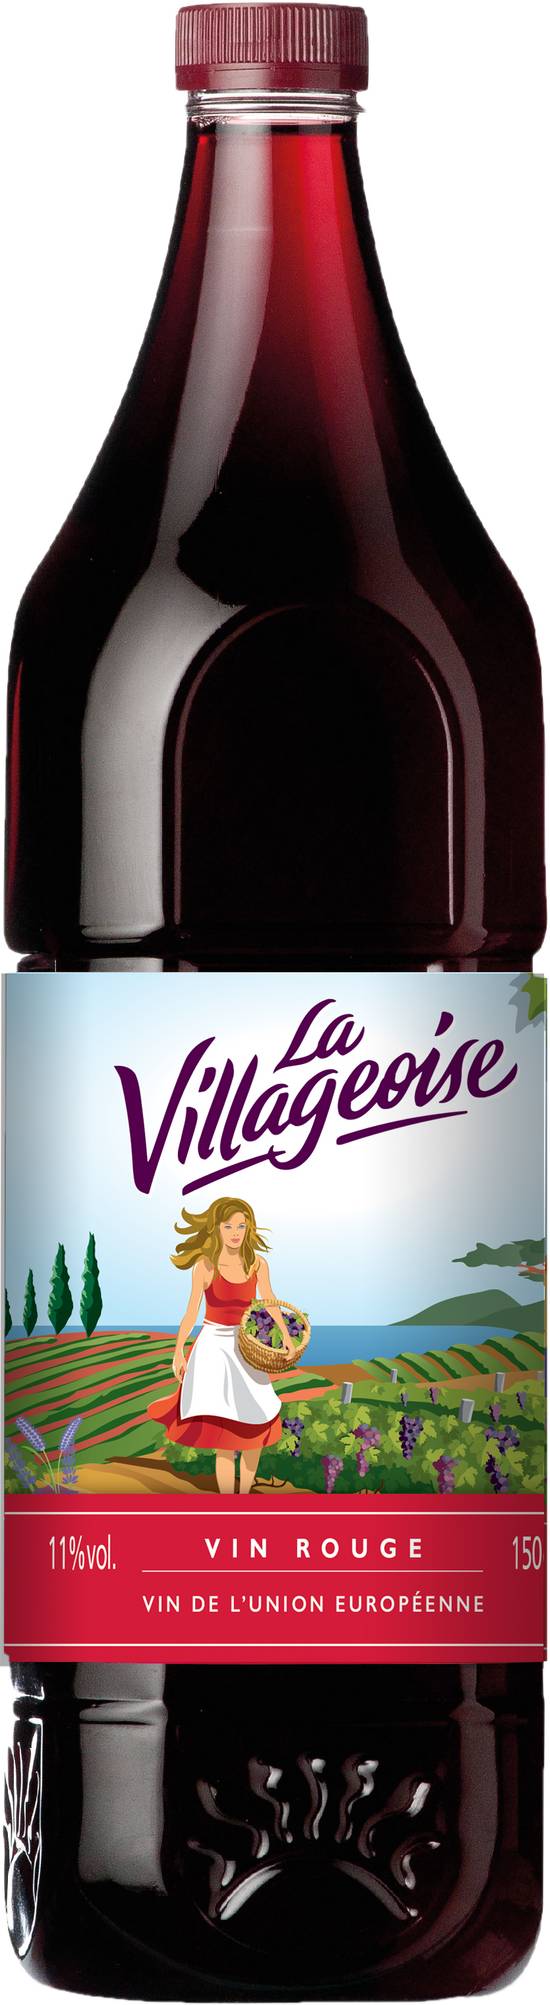 La Villageoise - Vin rouge de l'union européenne (1.5 L)